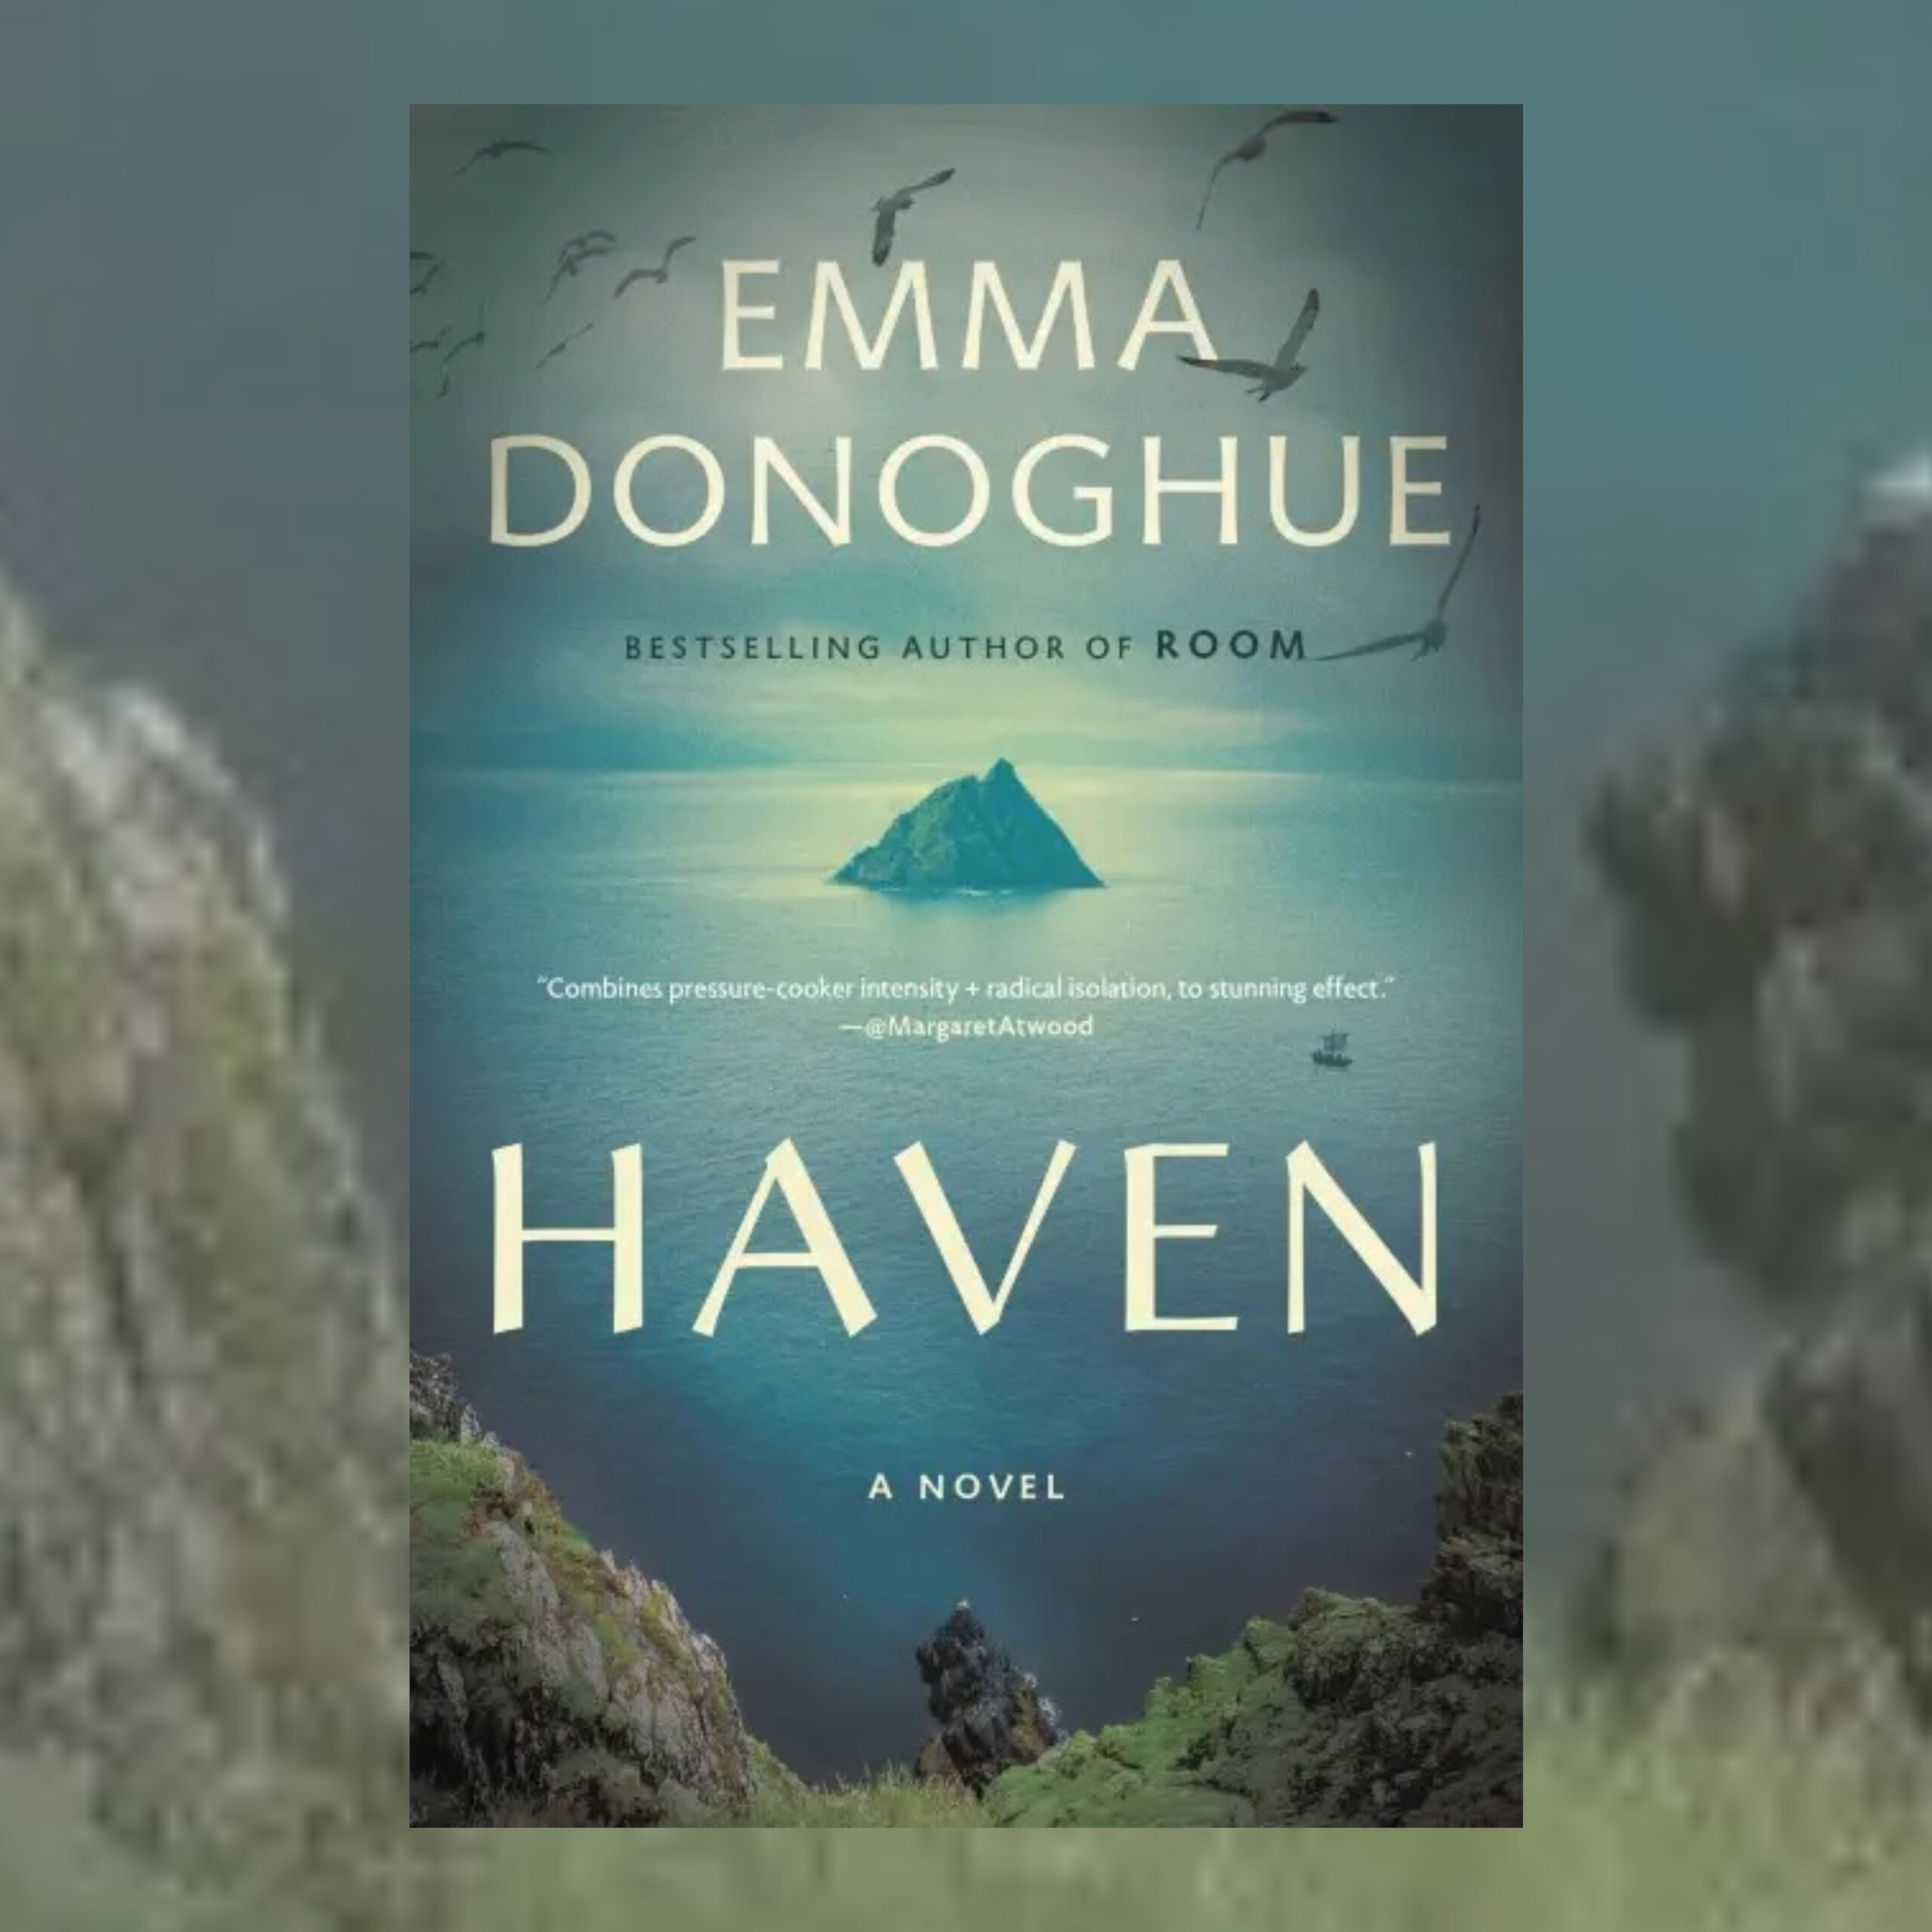 1801 - Emma Donoghue - Haven